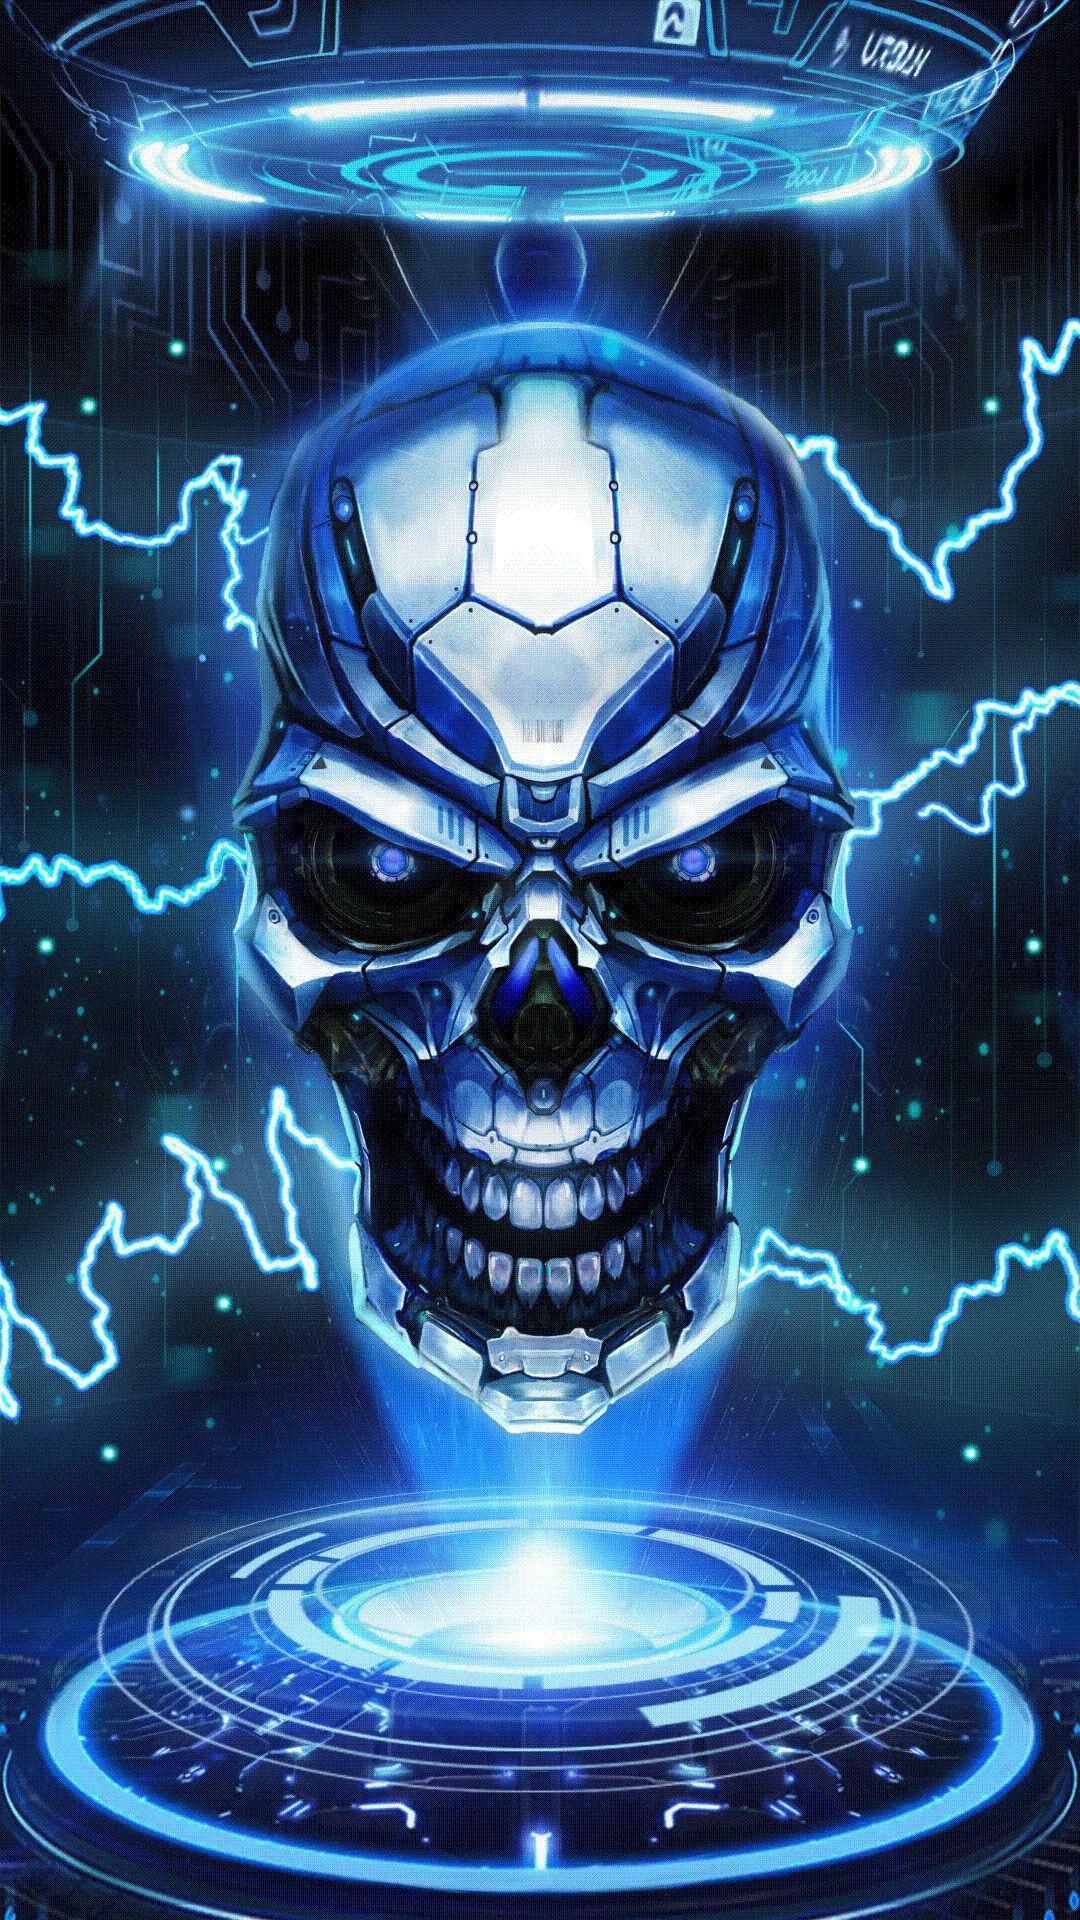 HD wallpaper Skull Skull illustration Art And Creative spooky blue  halloween  Wallpaper Flare